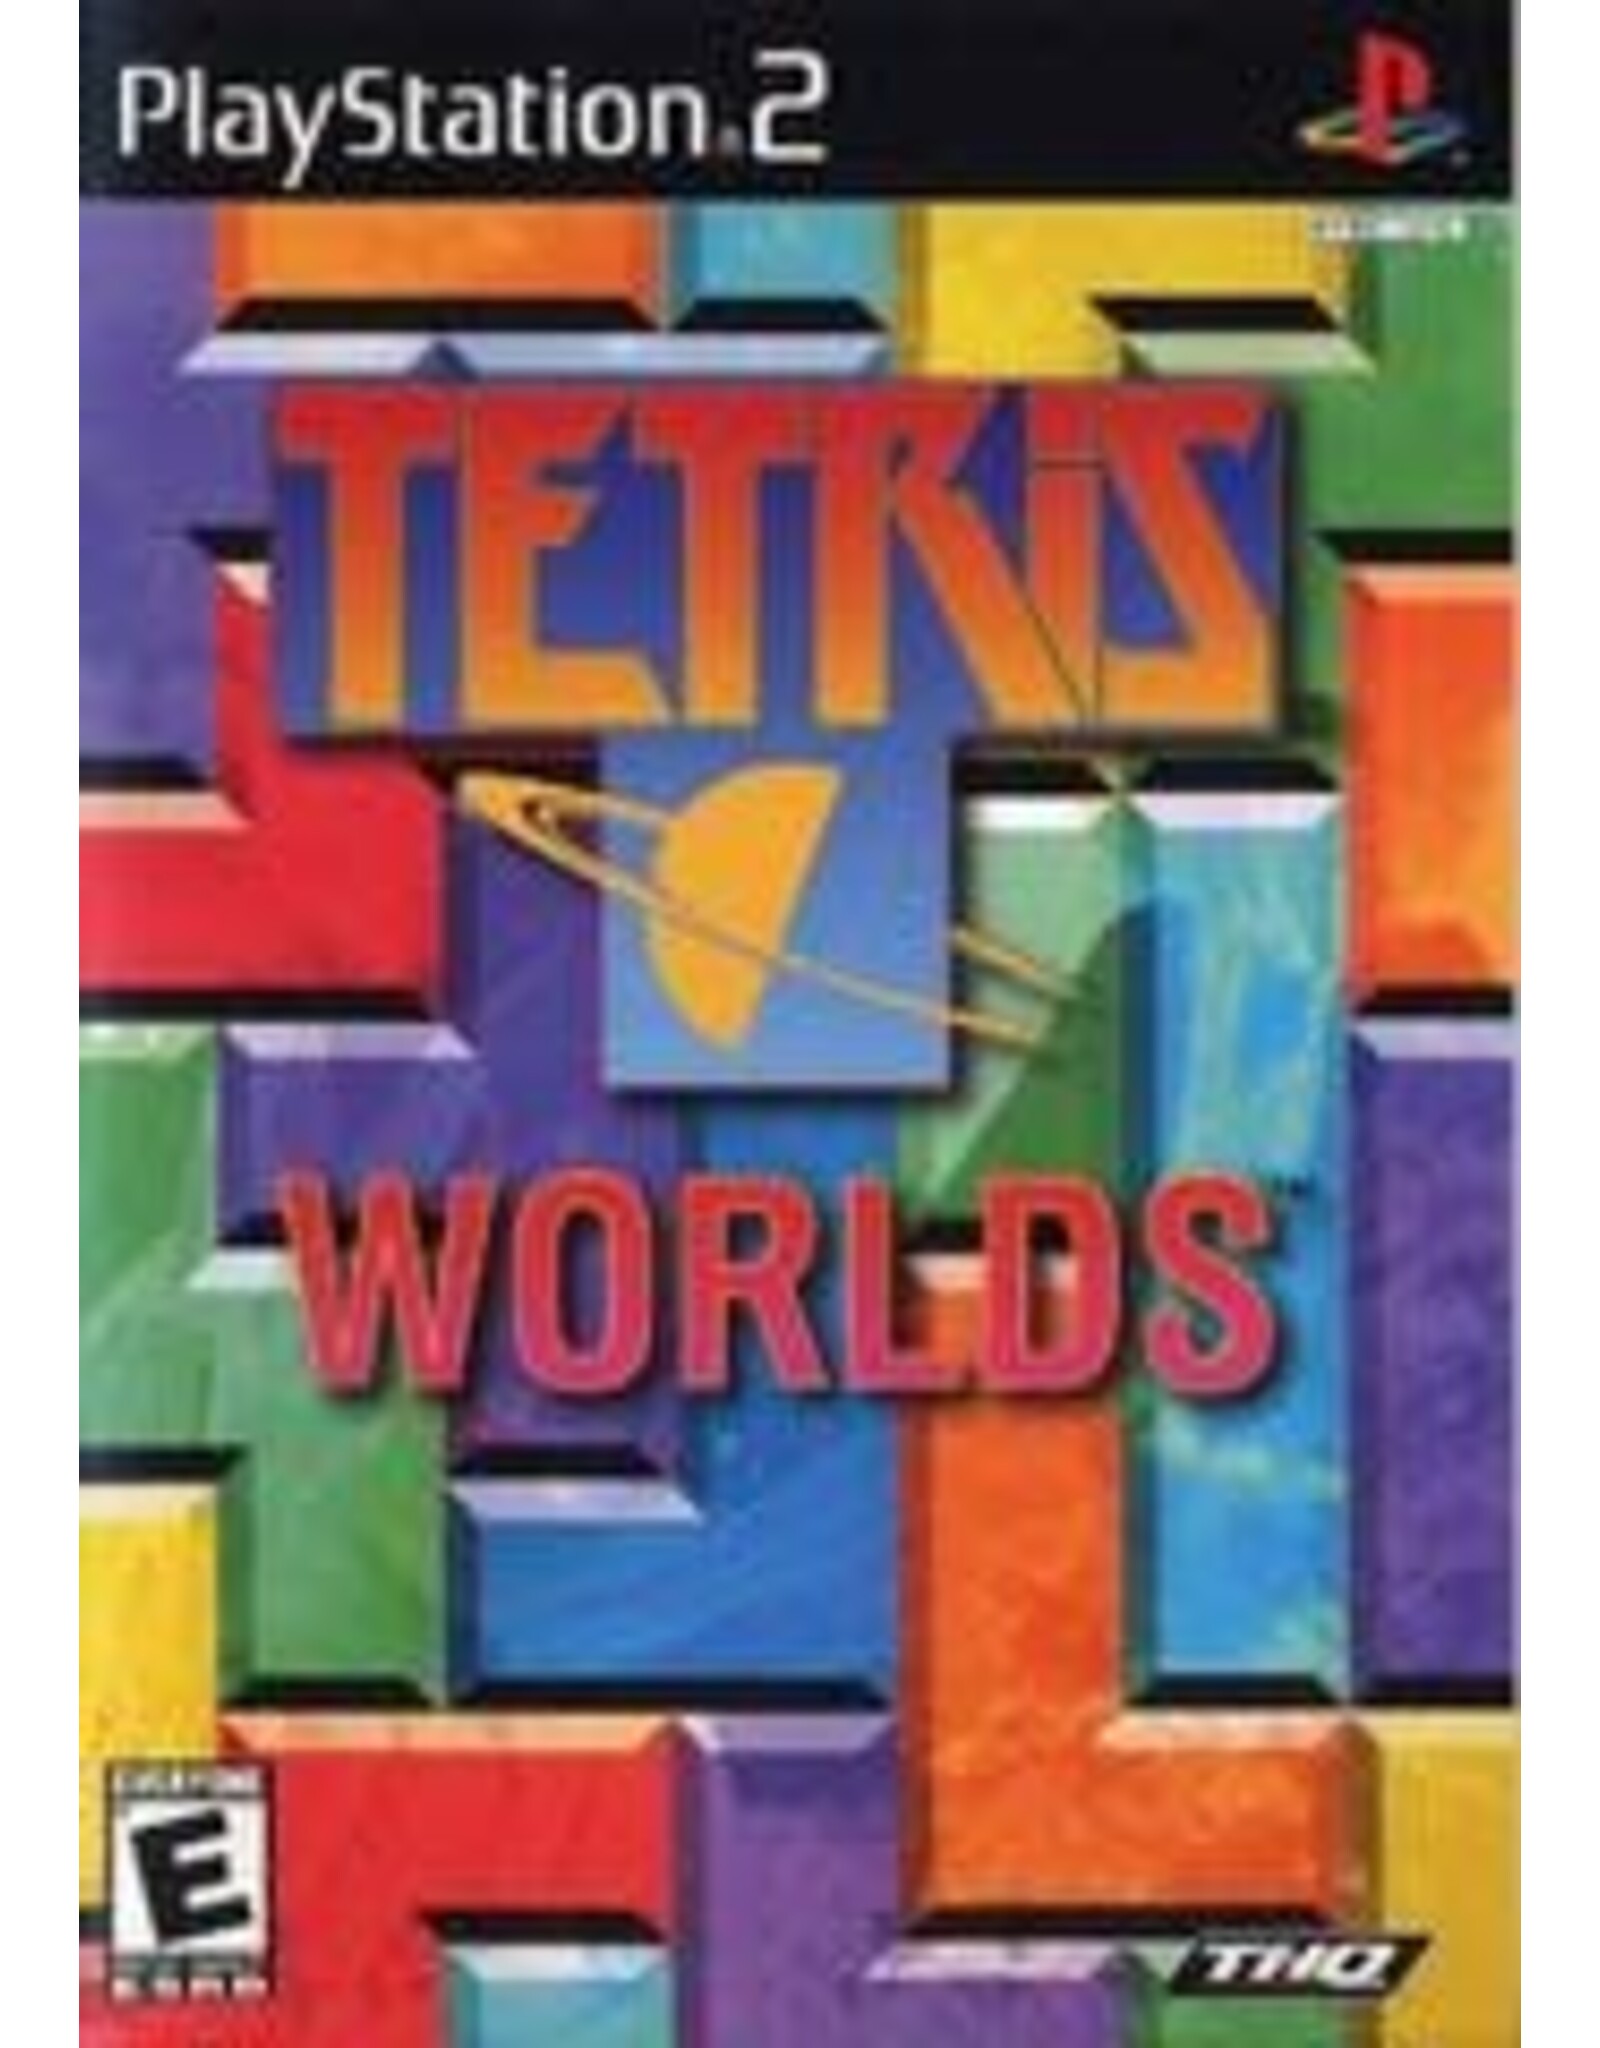 Playstation 2 Tetris Worlds (No Manual)